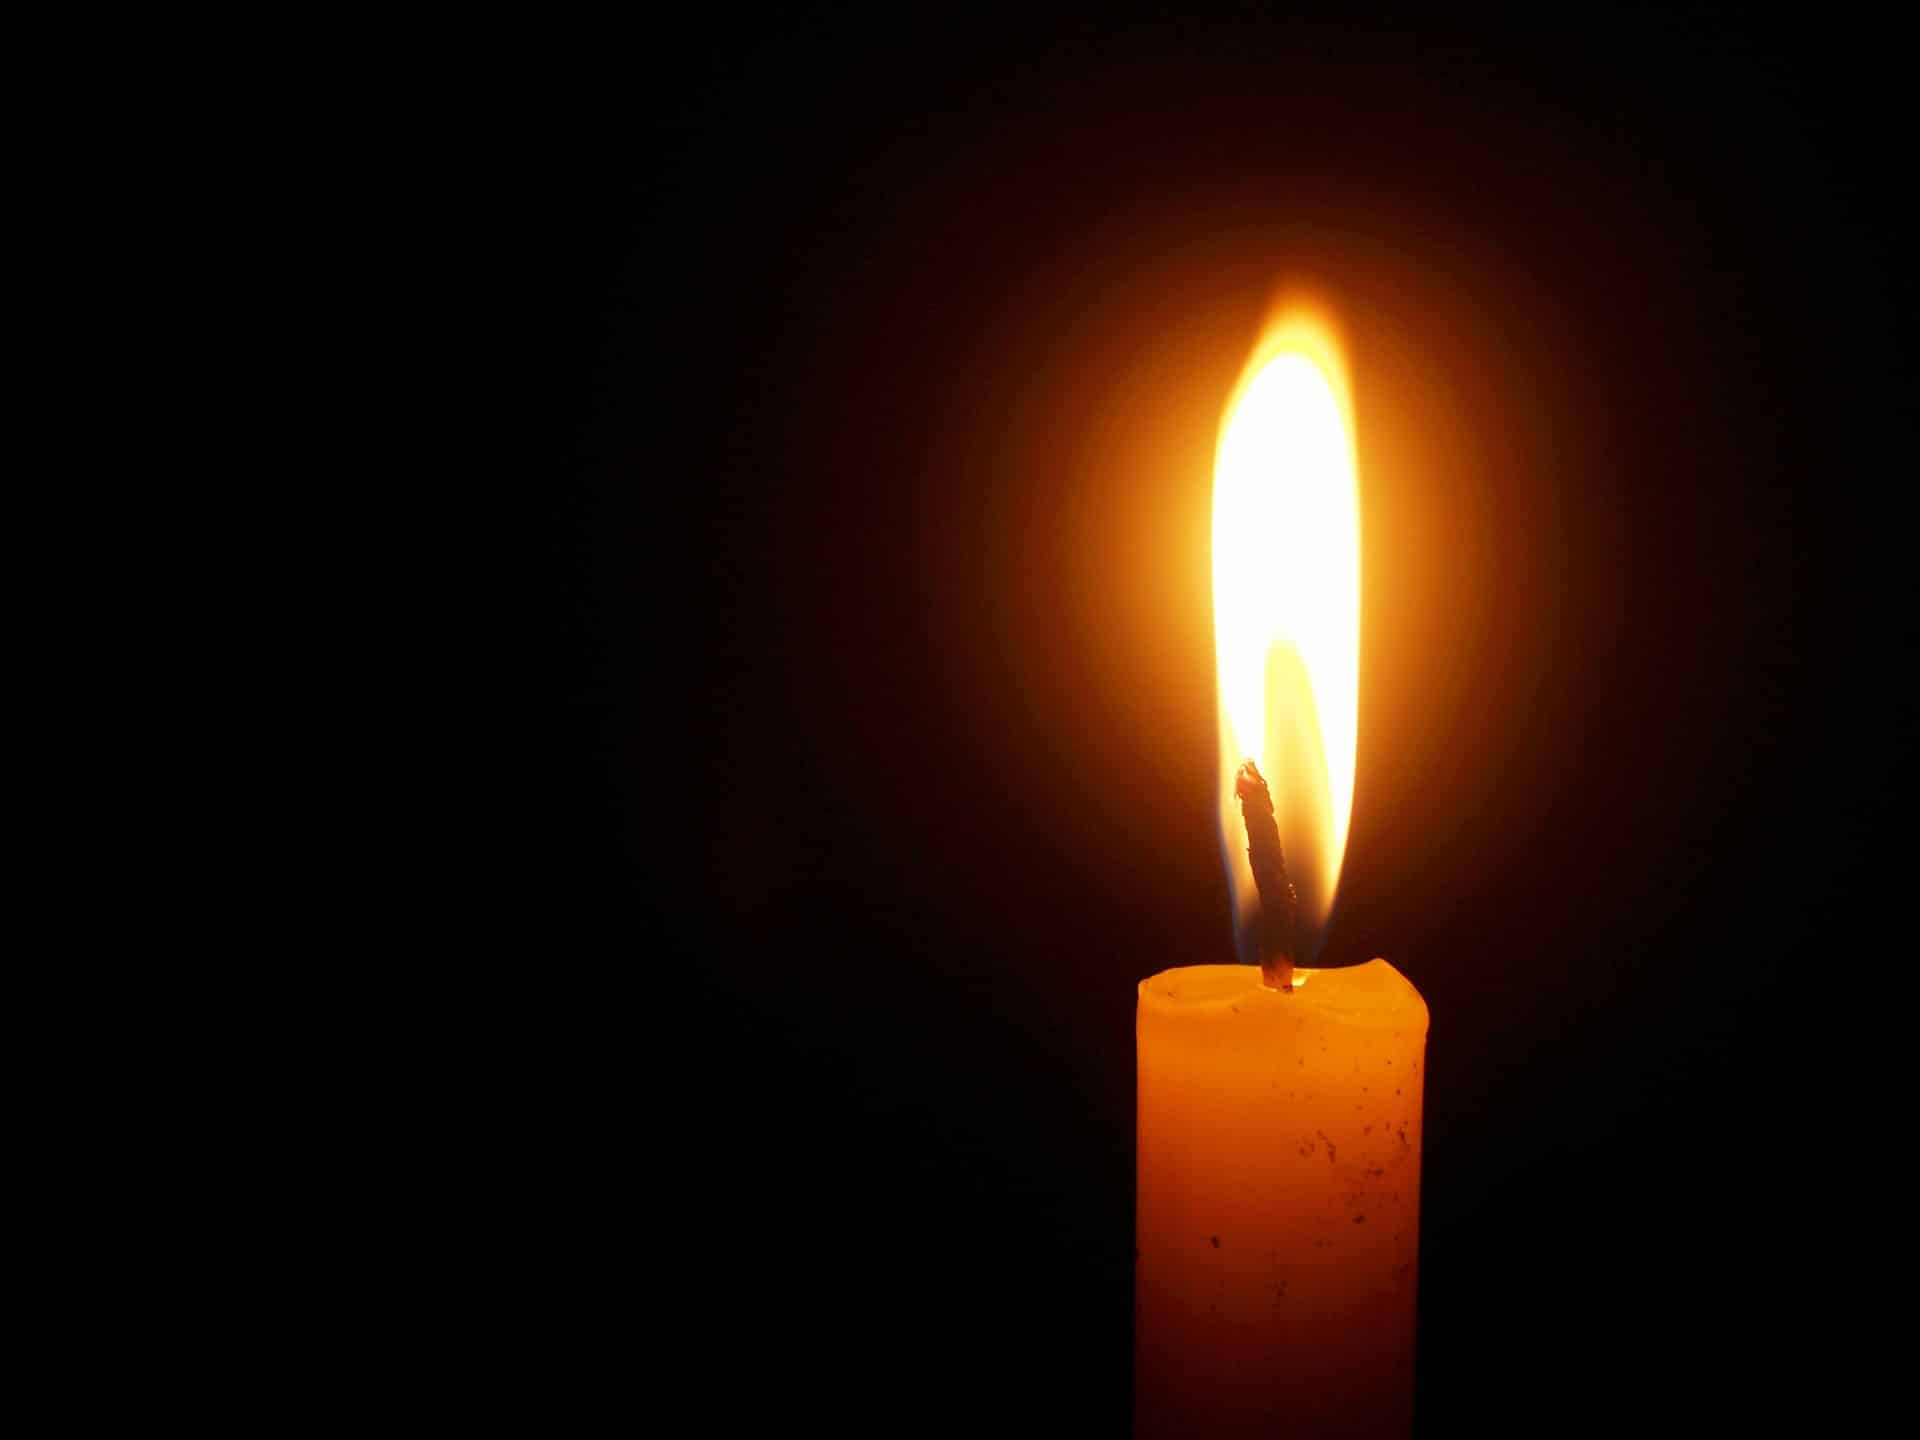 Έφυγε από την ζωή ο Αναστάσιος Ζιώγας σε ηλικία 84 ετών – Η κηδεία θα τελεστεί σήμερα Παρασκευή 16 Ιουνίου